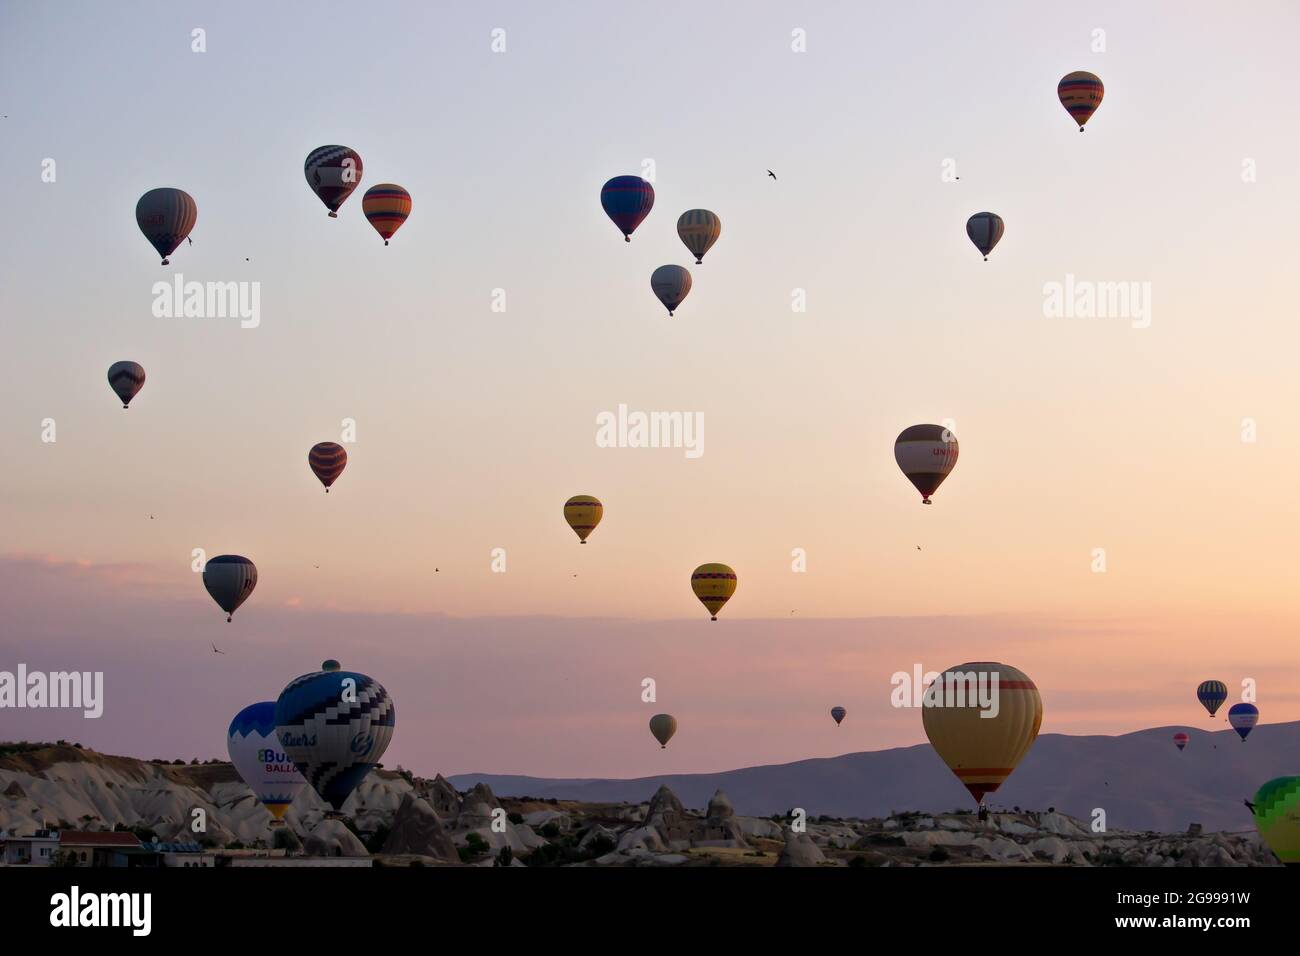 Cappadoce - Turquie, ballons d'air chaud dans le ciel à l'heure du matin, tourisme à la Turquie, célèbres costumes de caverne. Cappadoce, Turquie, 14 juin 2021 Banque D'Images